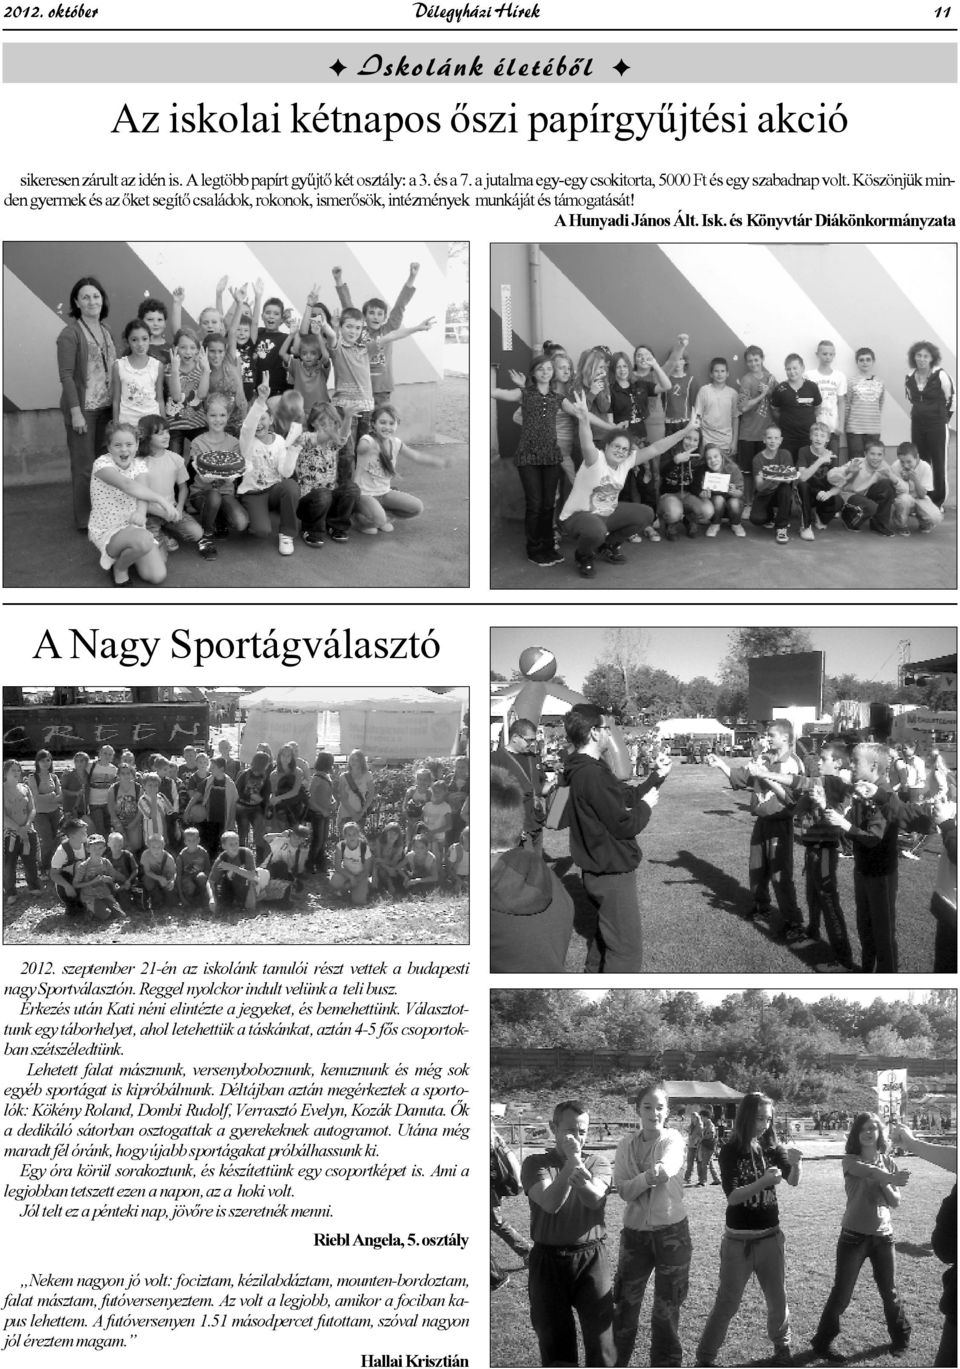 és Könyvtár Diákönkormányzata A Nagy Sportágválasztó 2012. szeptember 21-én az iskolánk tanulói részt vettek a budapesti nagy Sportválasztón. Reggel nyolckor indult velünk a teli busz.